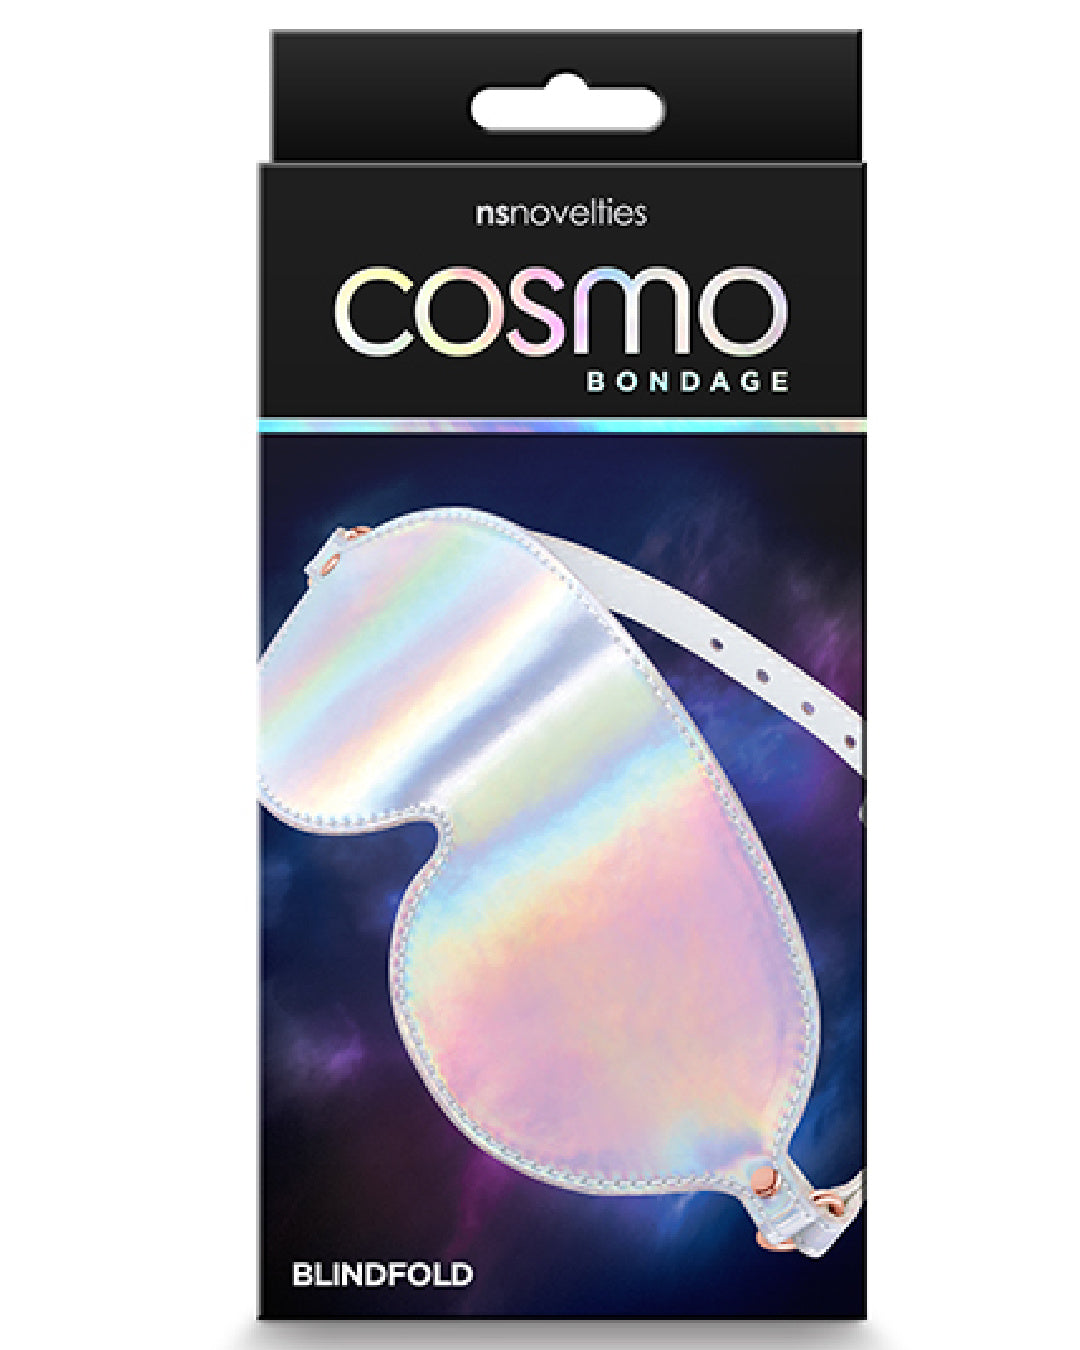 Cosmo Bondage Holographic Blindfold Box 